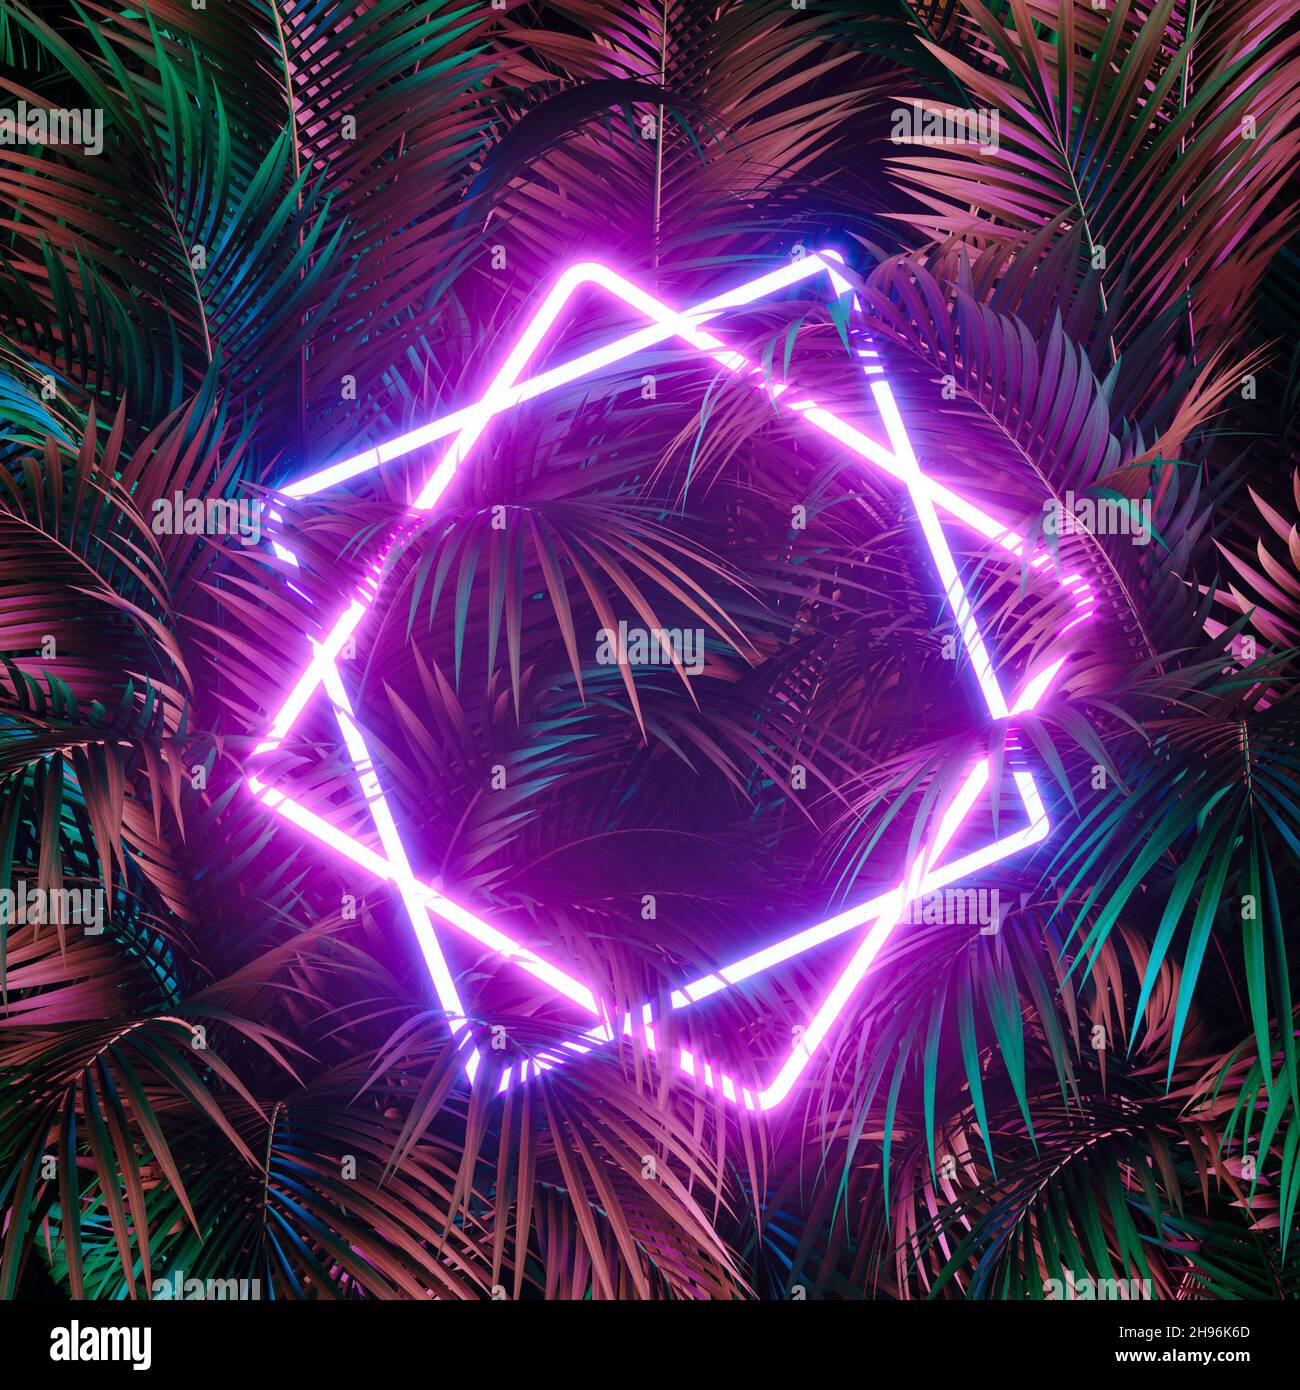 Luz de neón creativa de la selva, marco cibernético sobre hojas de palma frescas con espacio de copia. Concepto de fondo urbano y futurista. Capa plana. Foto de stock